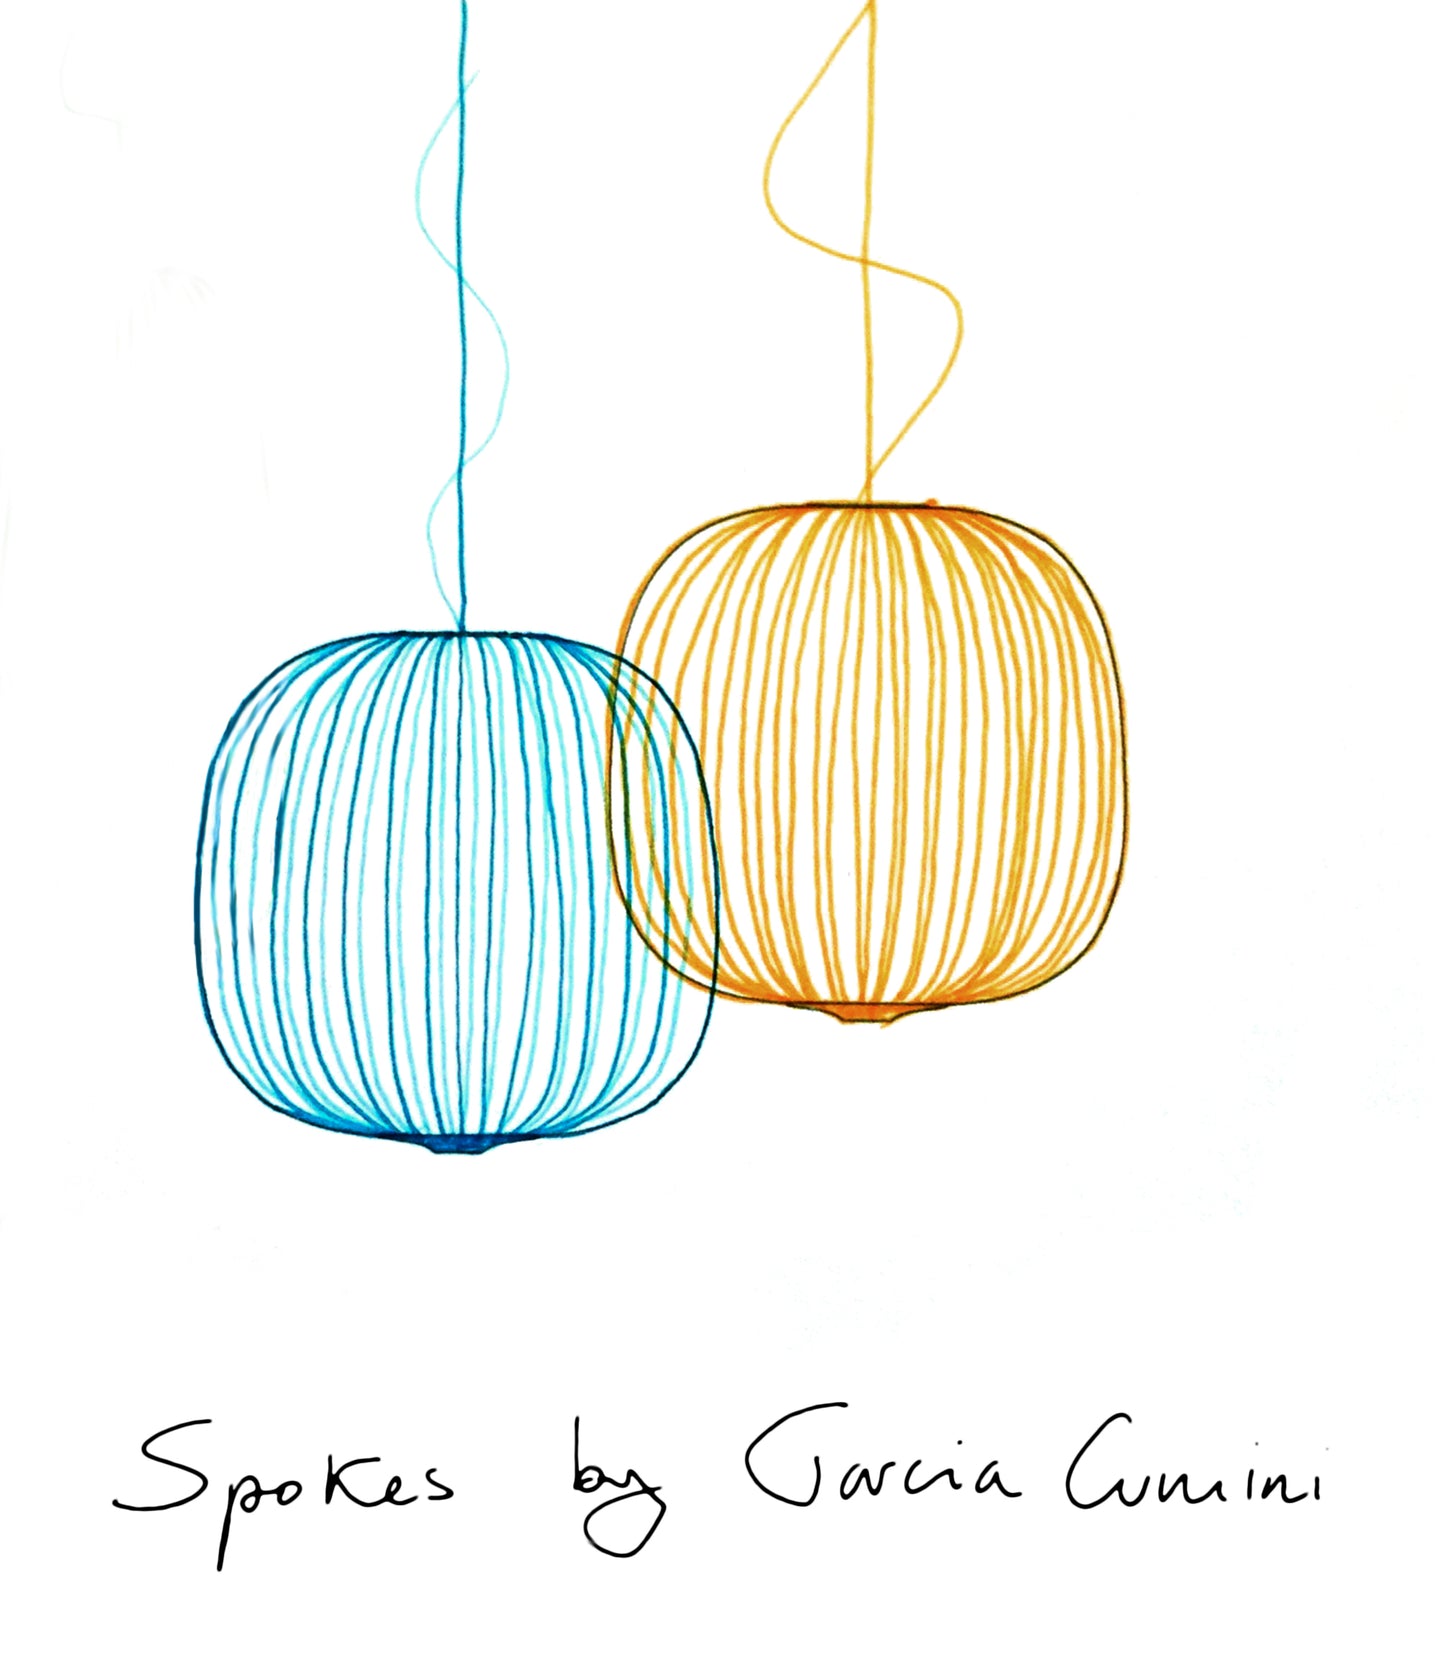 Garcia Cumini on Spokes and Foscarini
